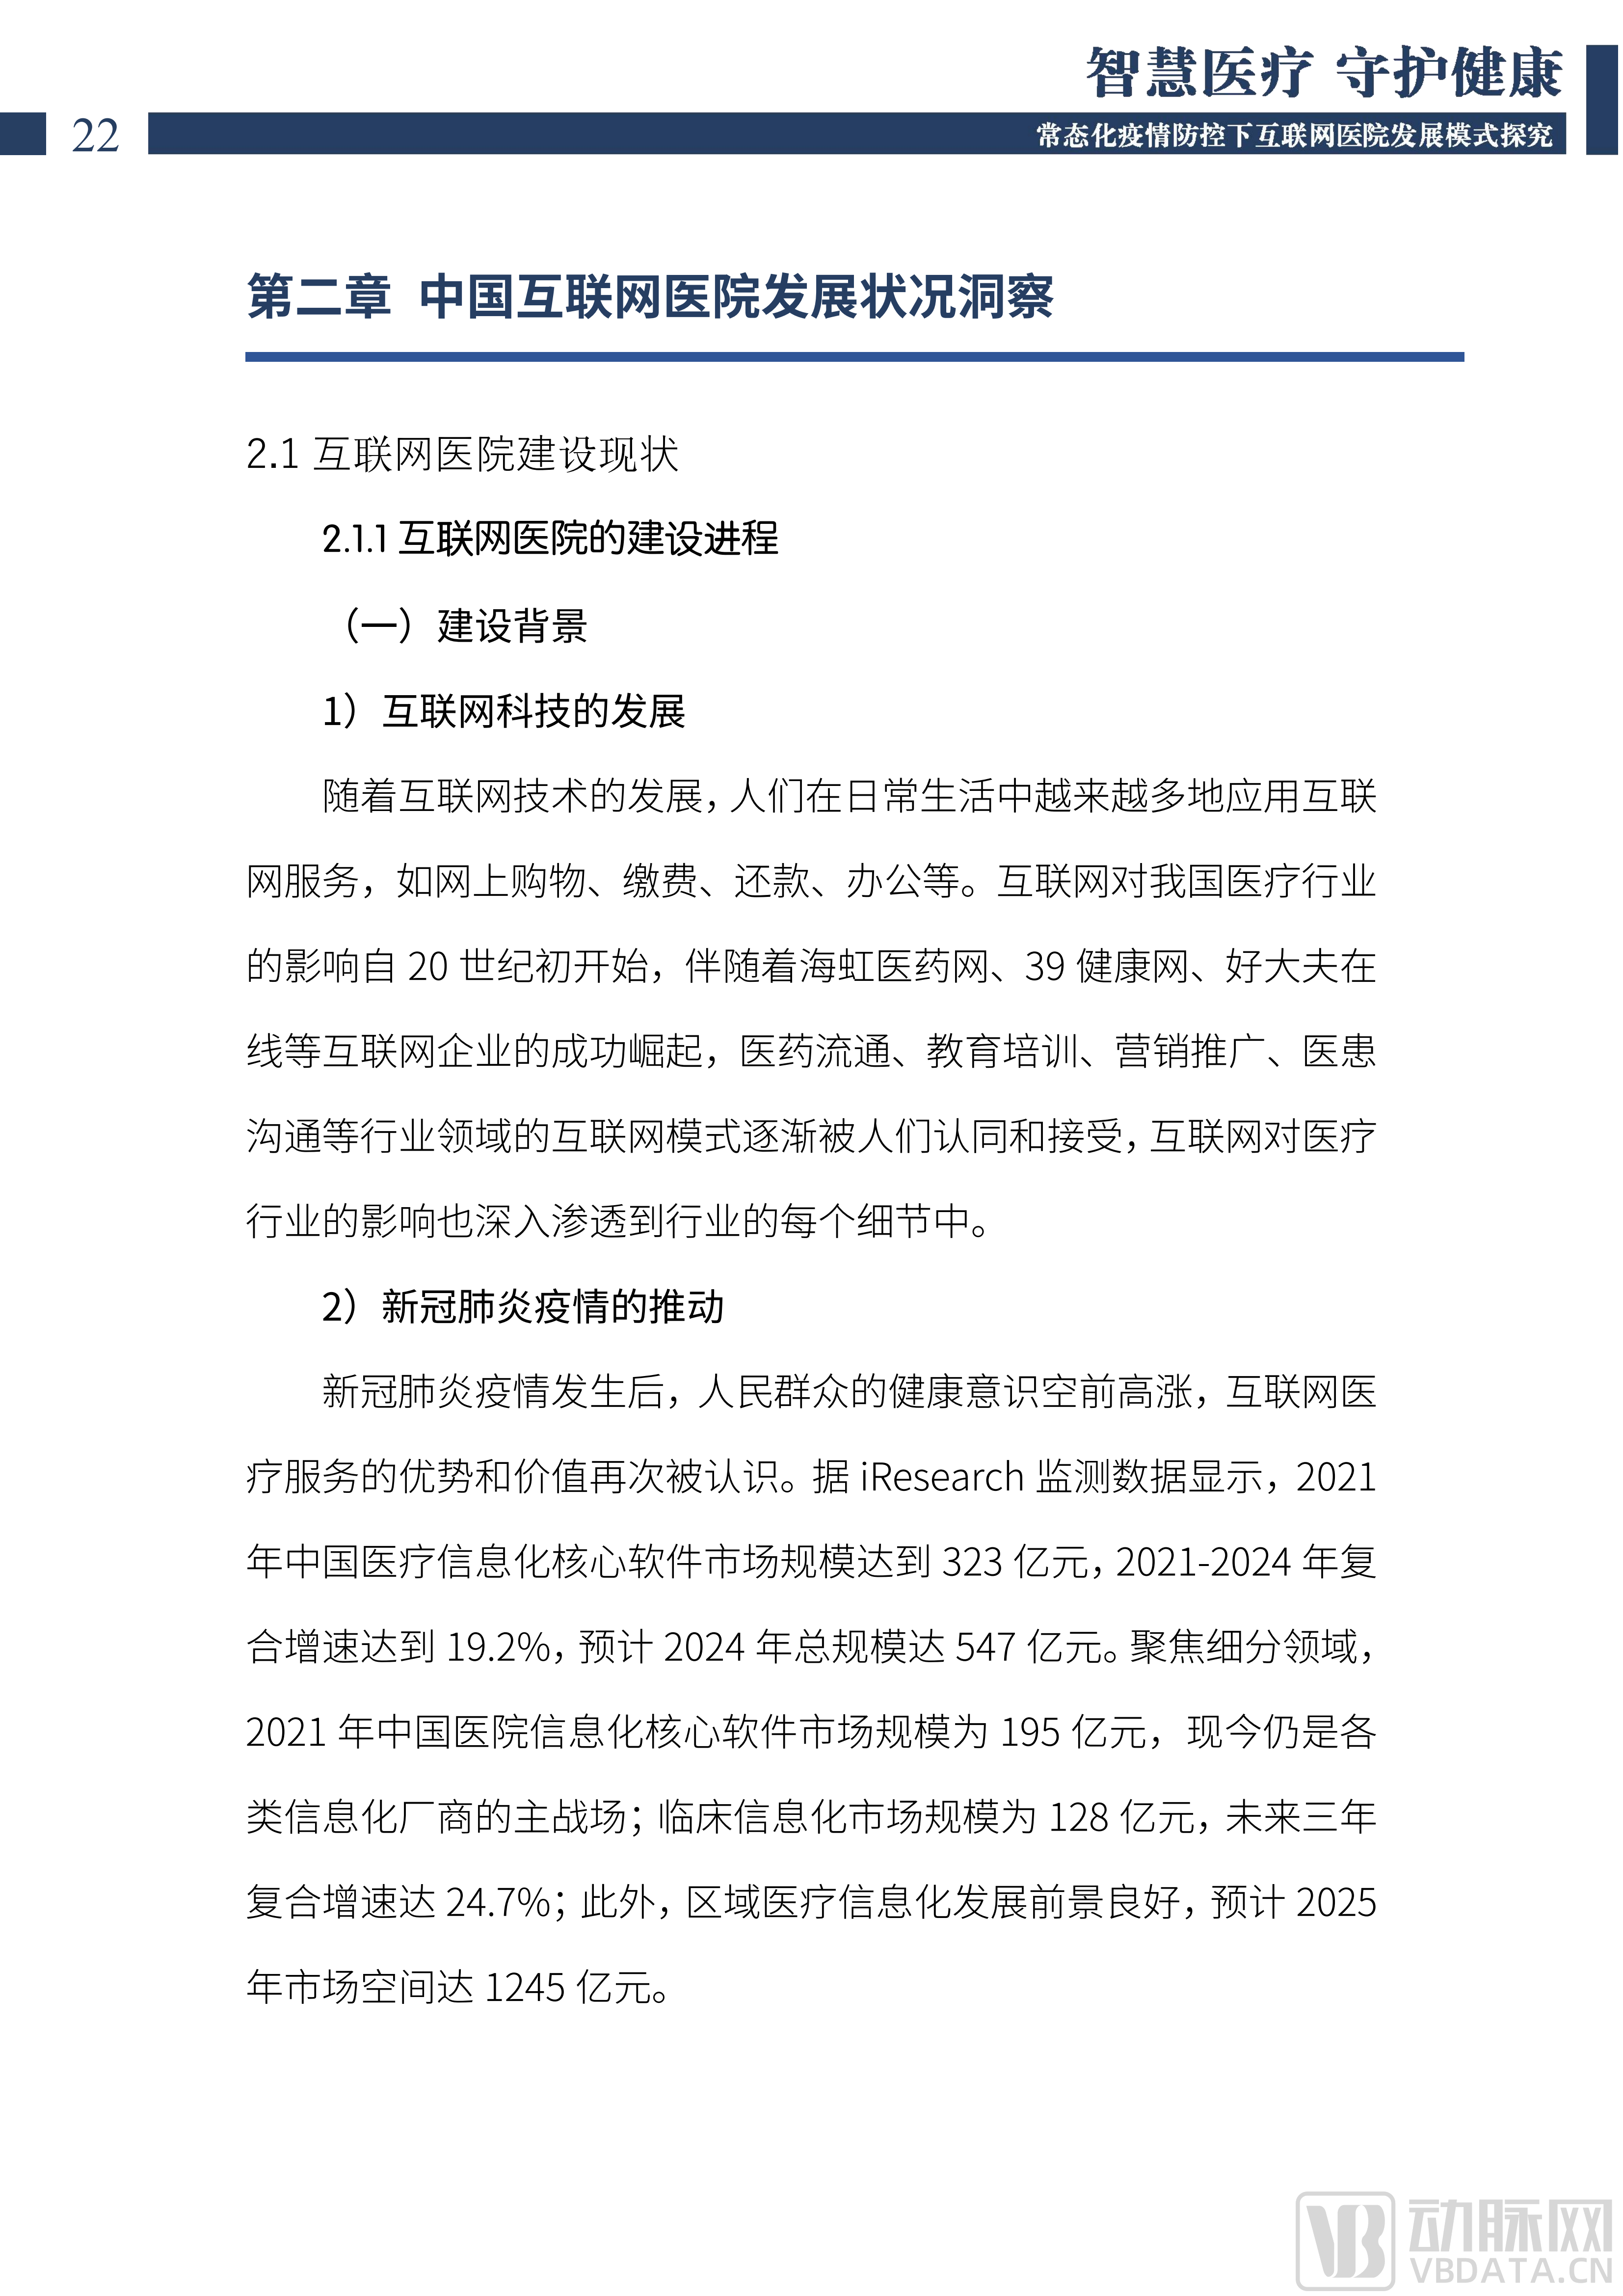 2022中国互联网医院发展调研报告(1)_23.png